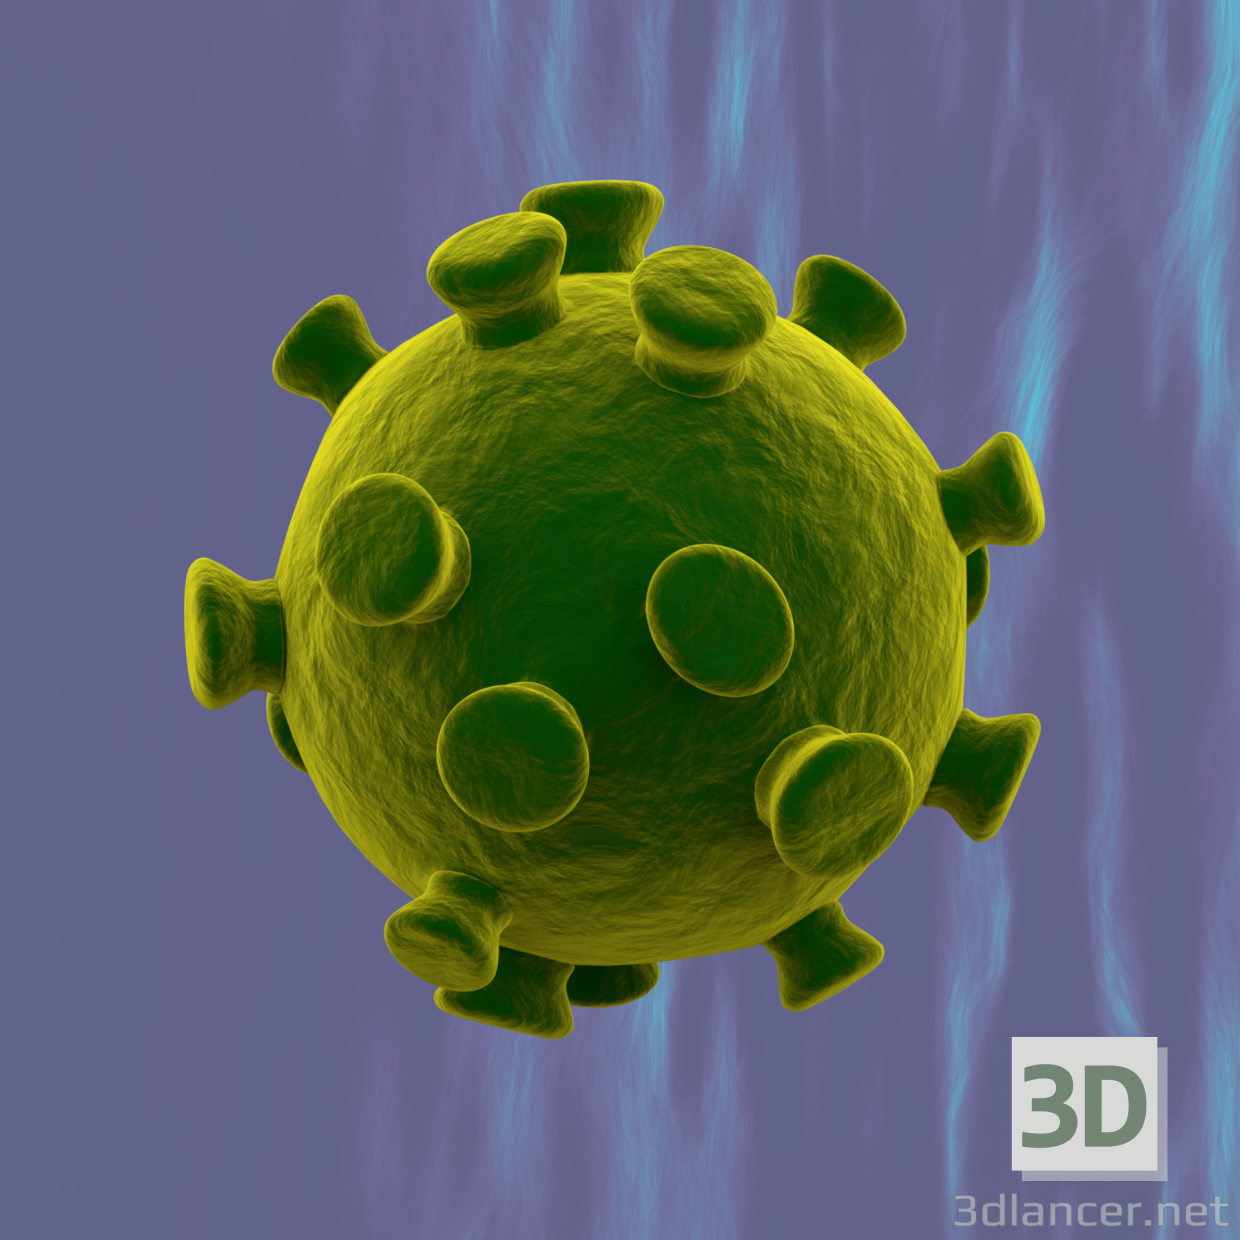 3d Coronavirus 2019-nCoV CNN model buy - render